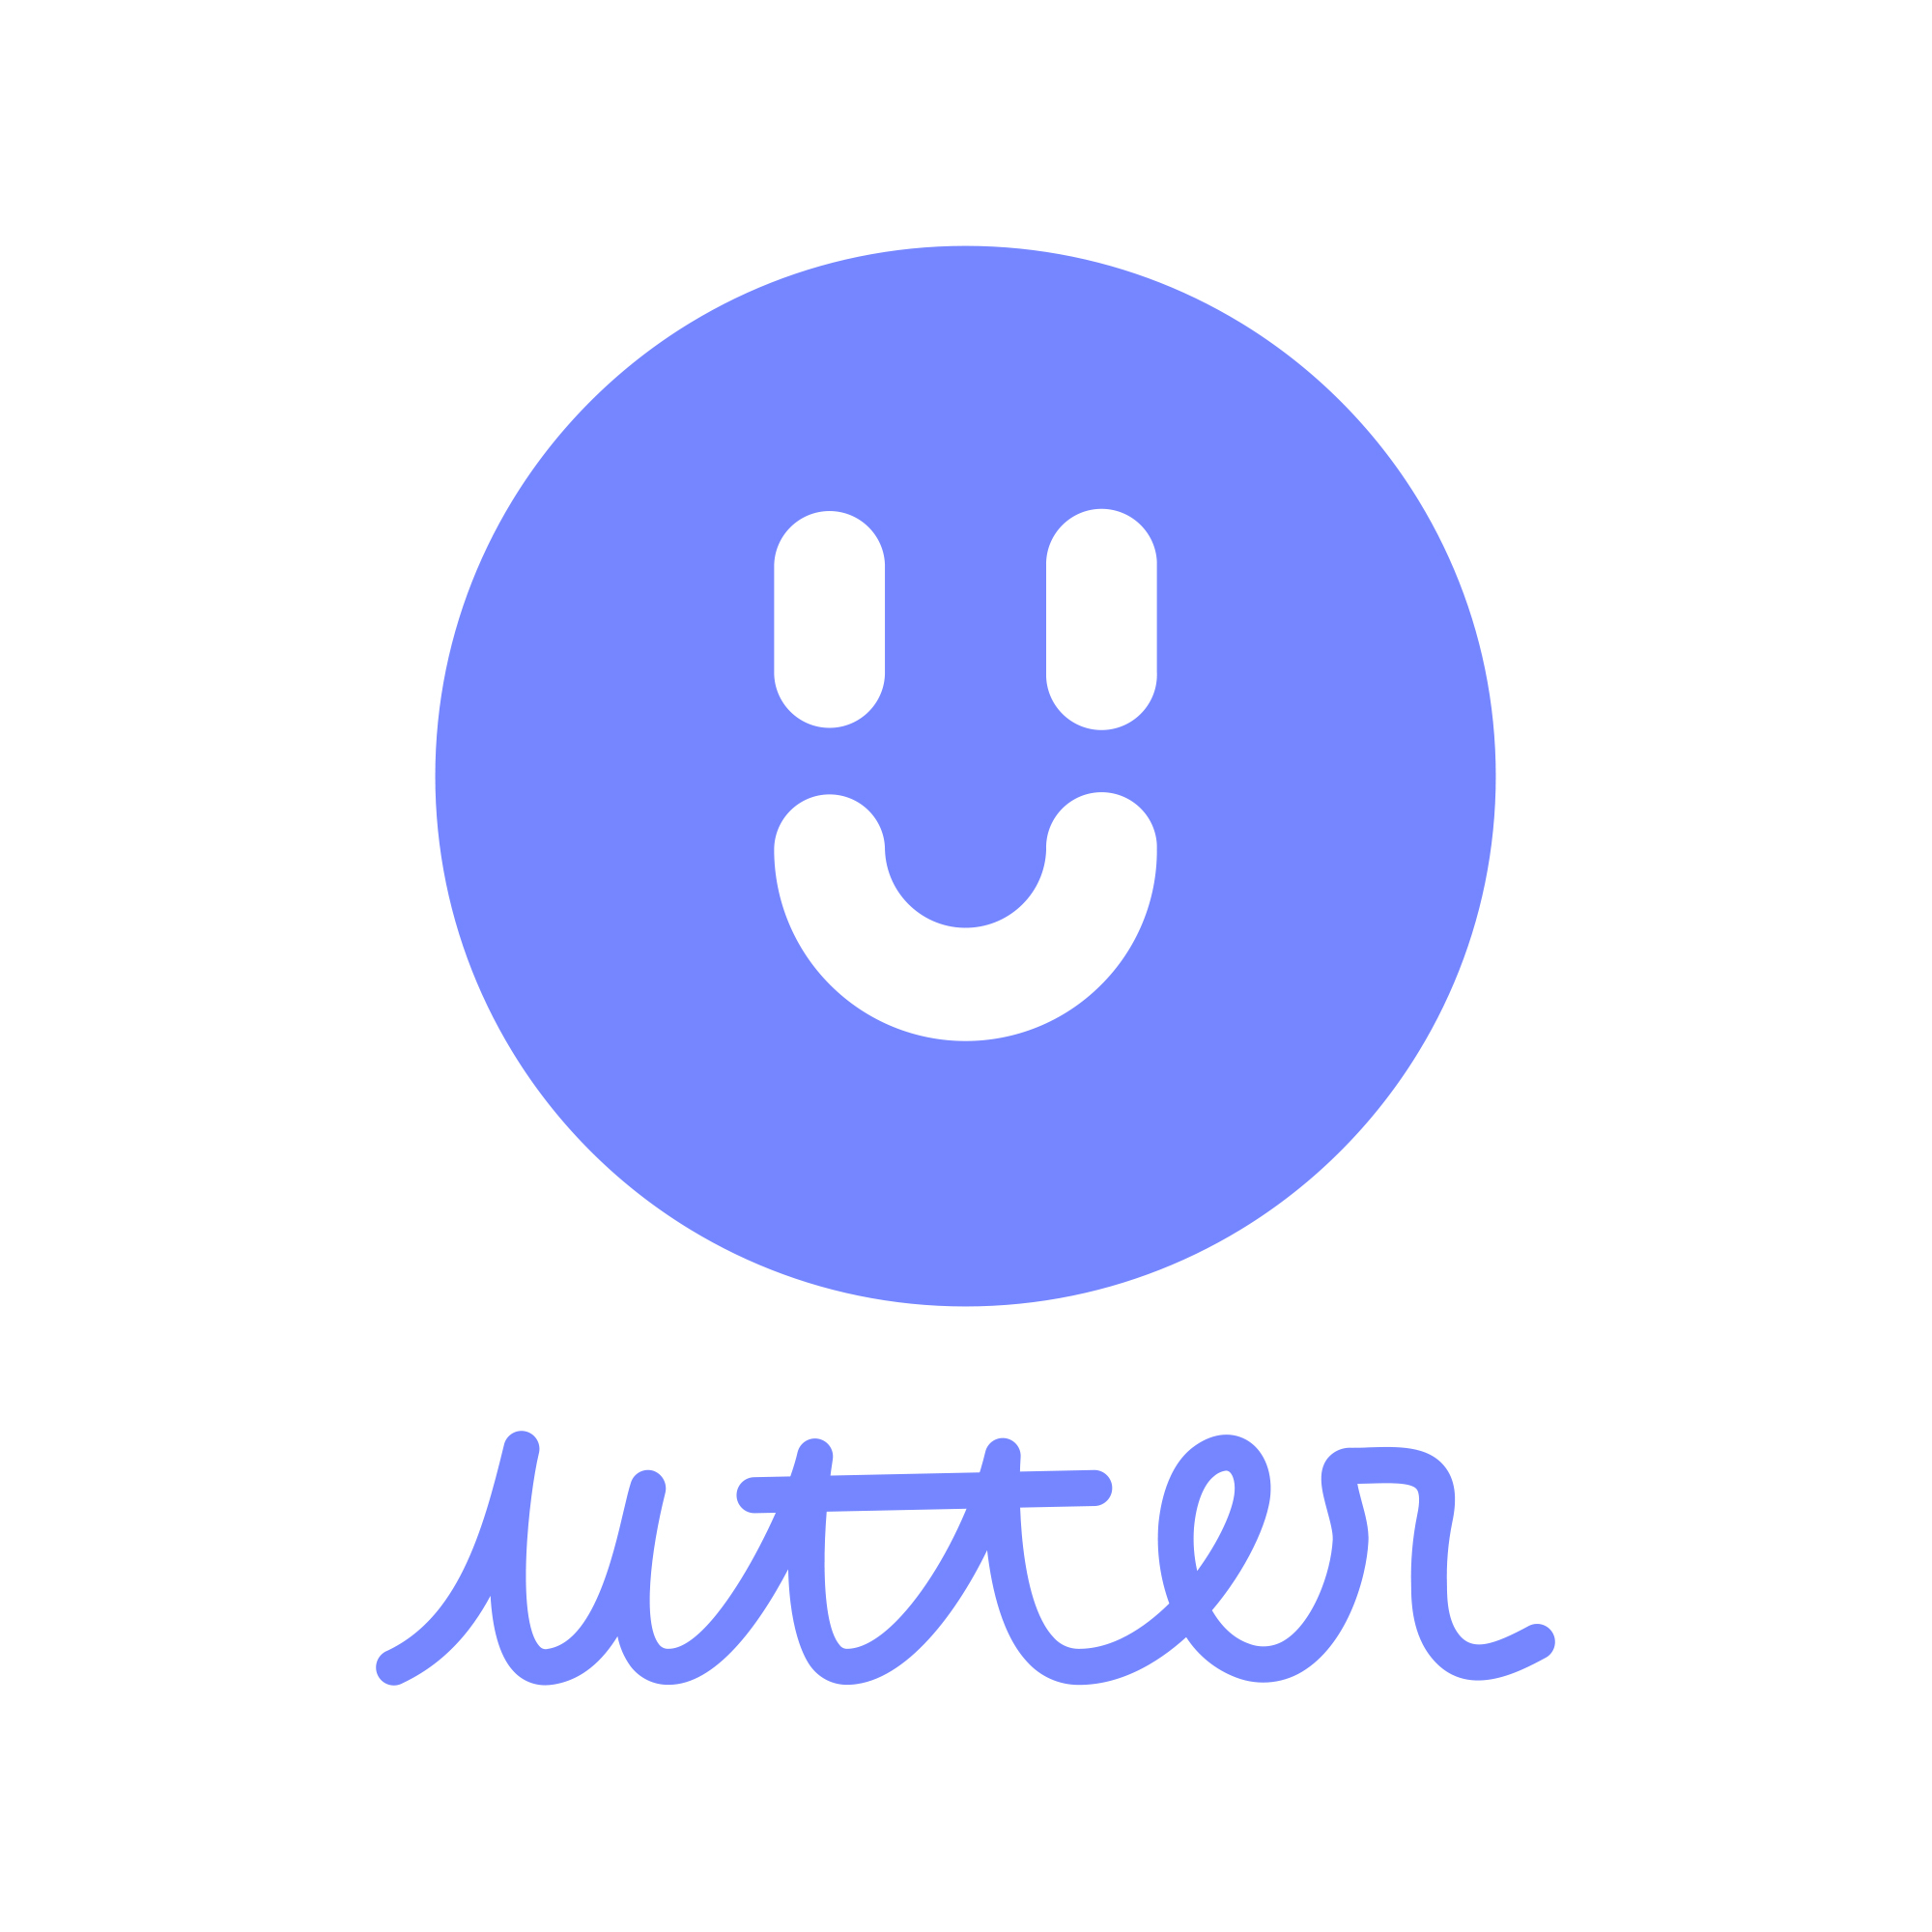 utter-logo-with-name.jpg